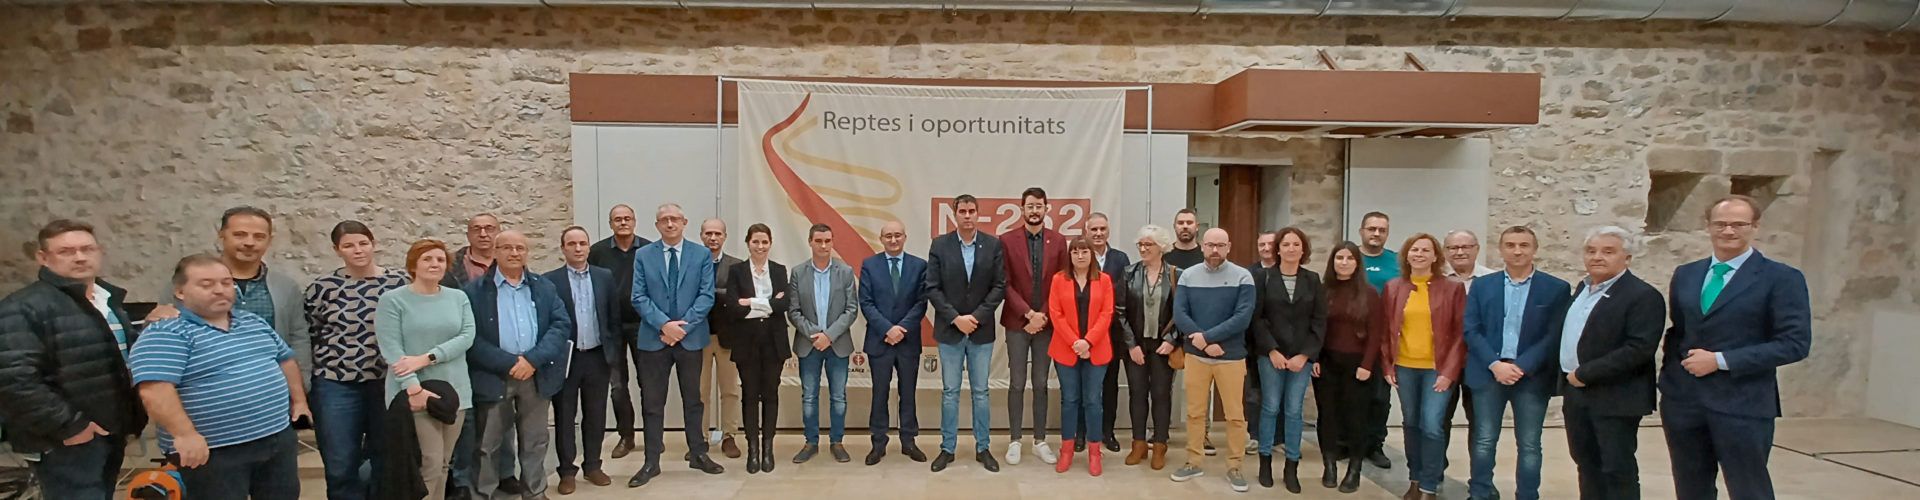 Vinaròs, Alcanyís i Morella, junt al sector empresarial, units pels reptes i oportunitats de la nova N-232